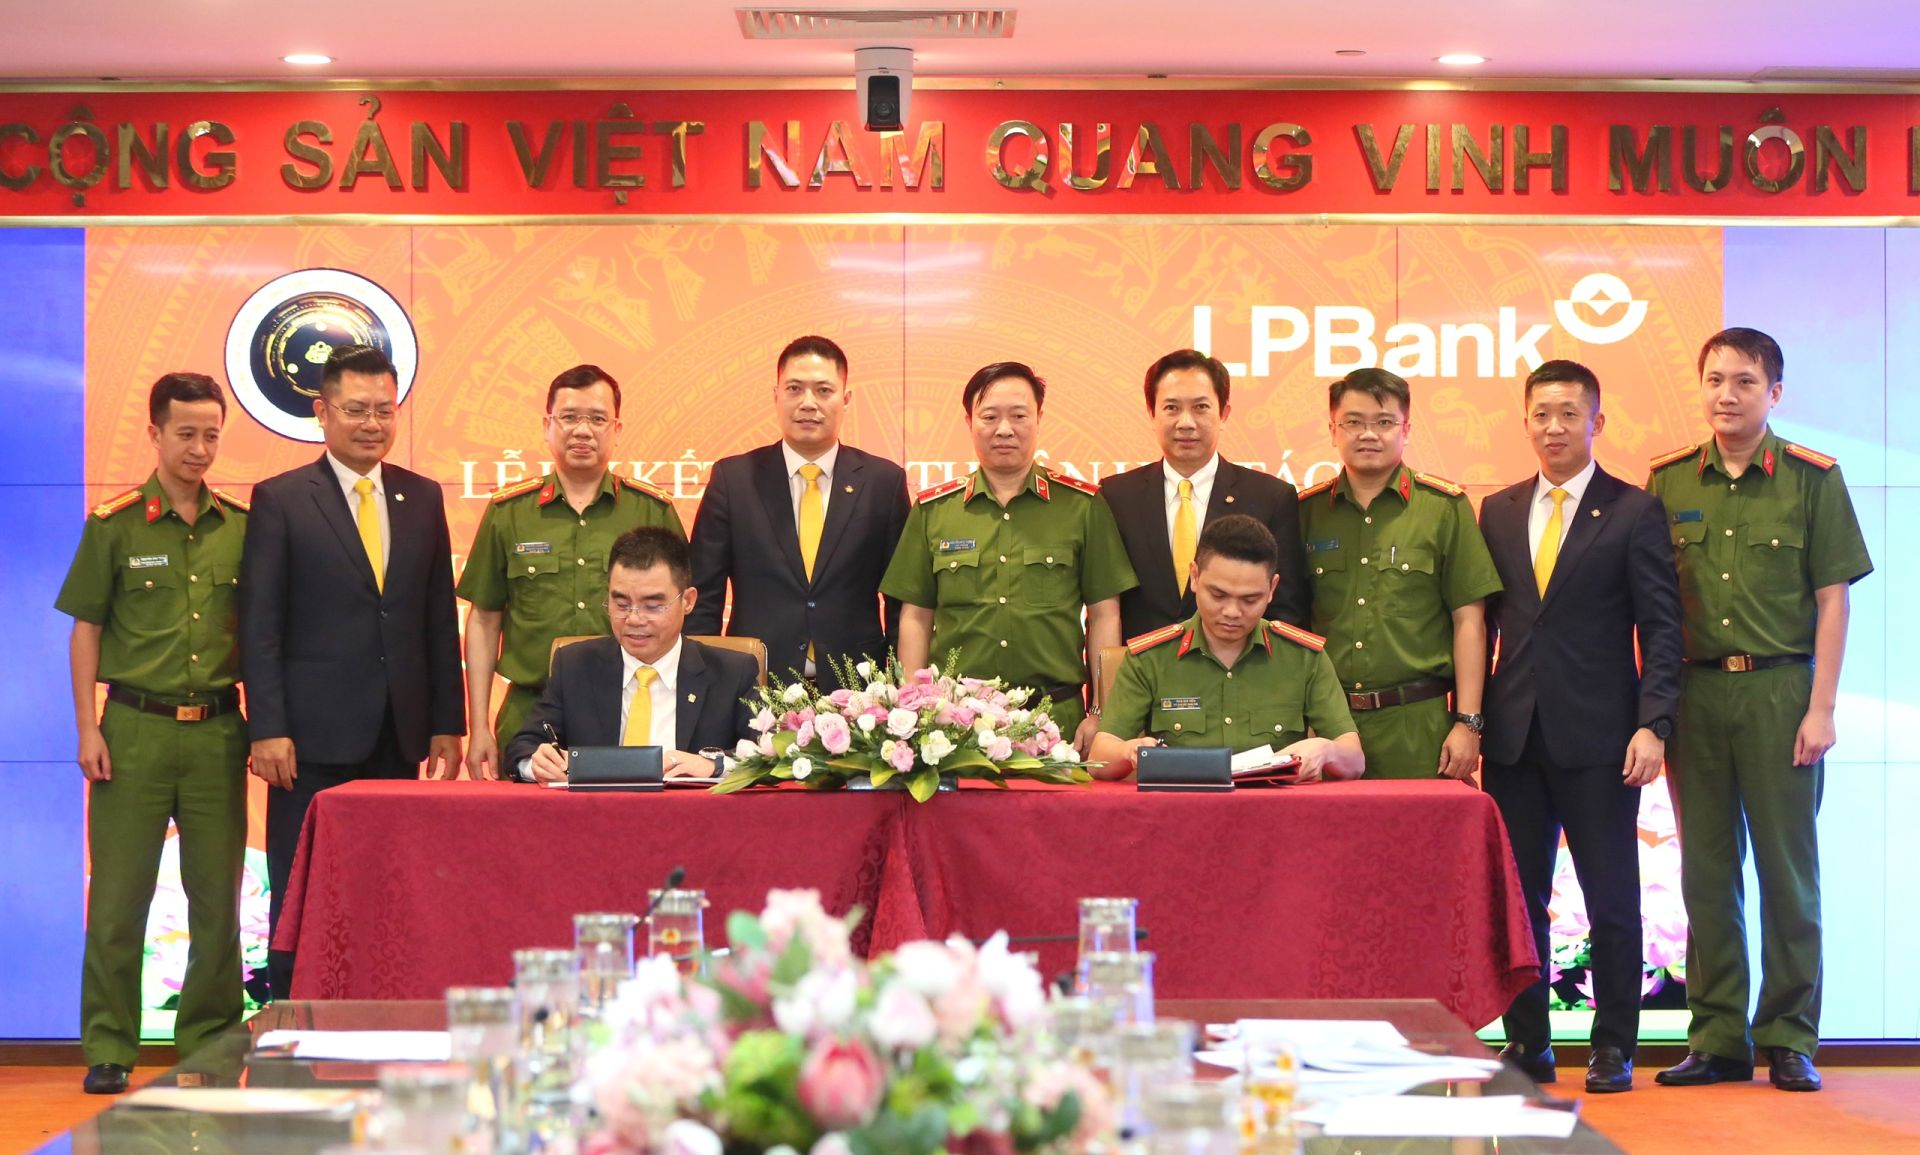 Giám đốc Trung tâm RAR  - Thiếu tá Trần Duy Hiển (bên phải) và Phó Chủ tịch HĐQT kiêm Tổng giám đốc LPBank Hồ Nam Tiến (bên trái) cùng lãnh đạo hai Bên thực hiện ký kết thoả thuận hợp tác